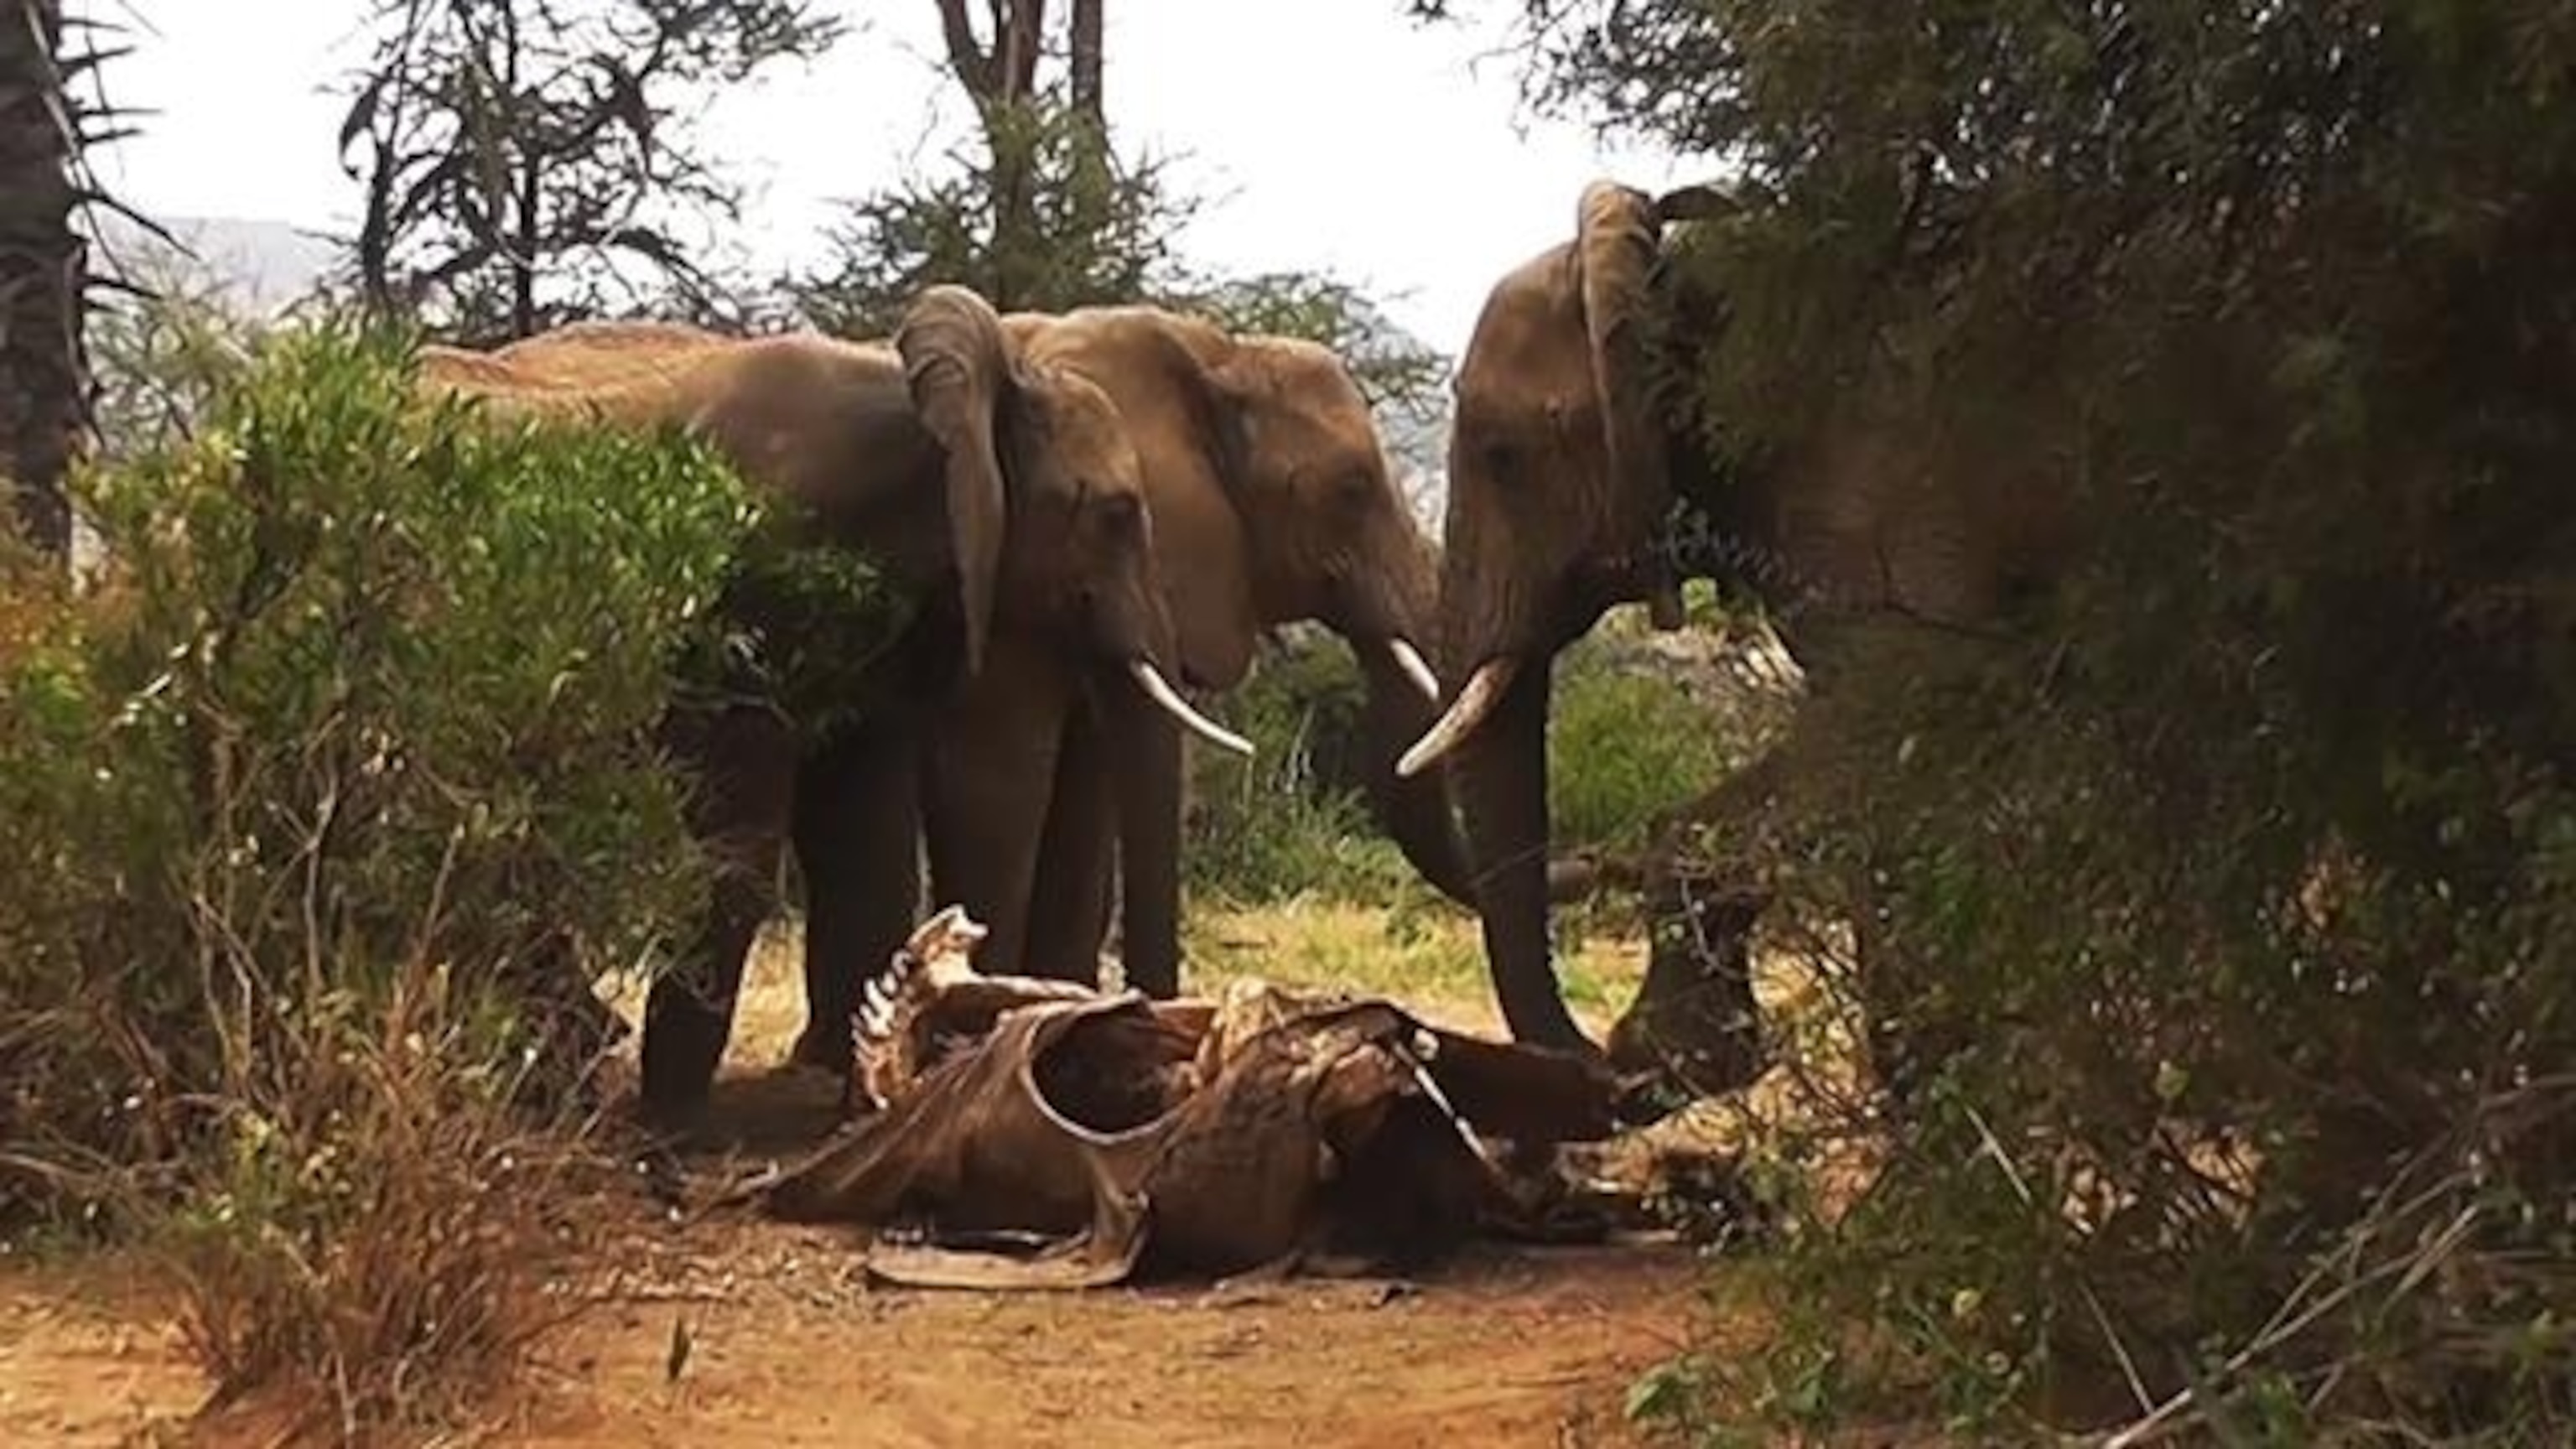 Do elephants mourn their dead?